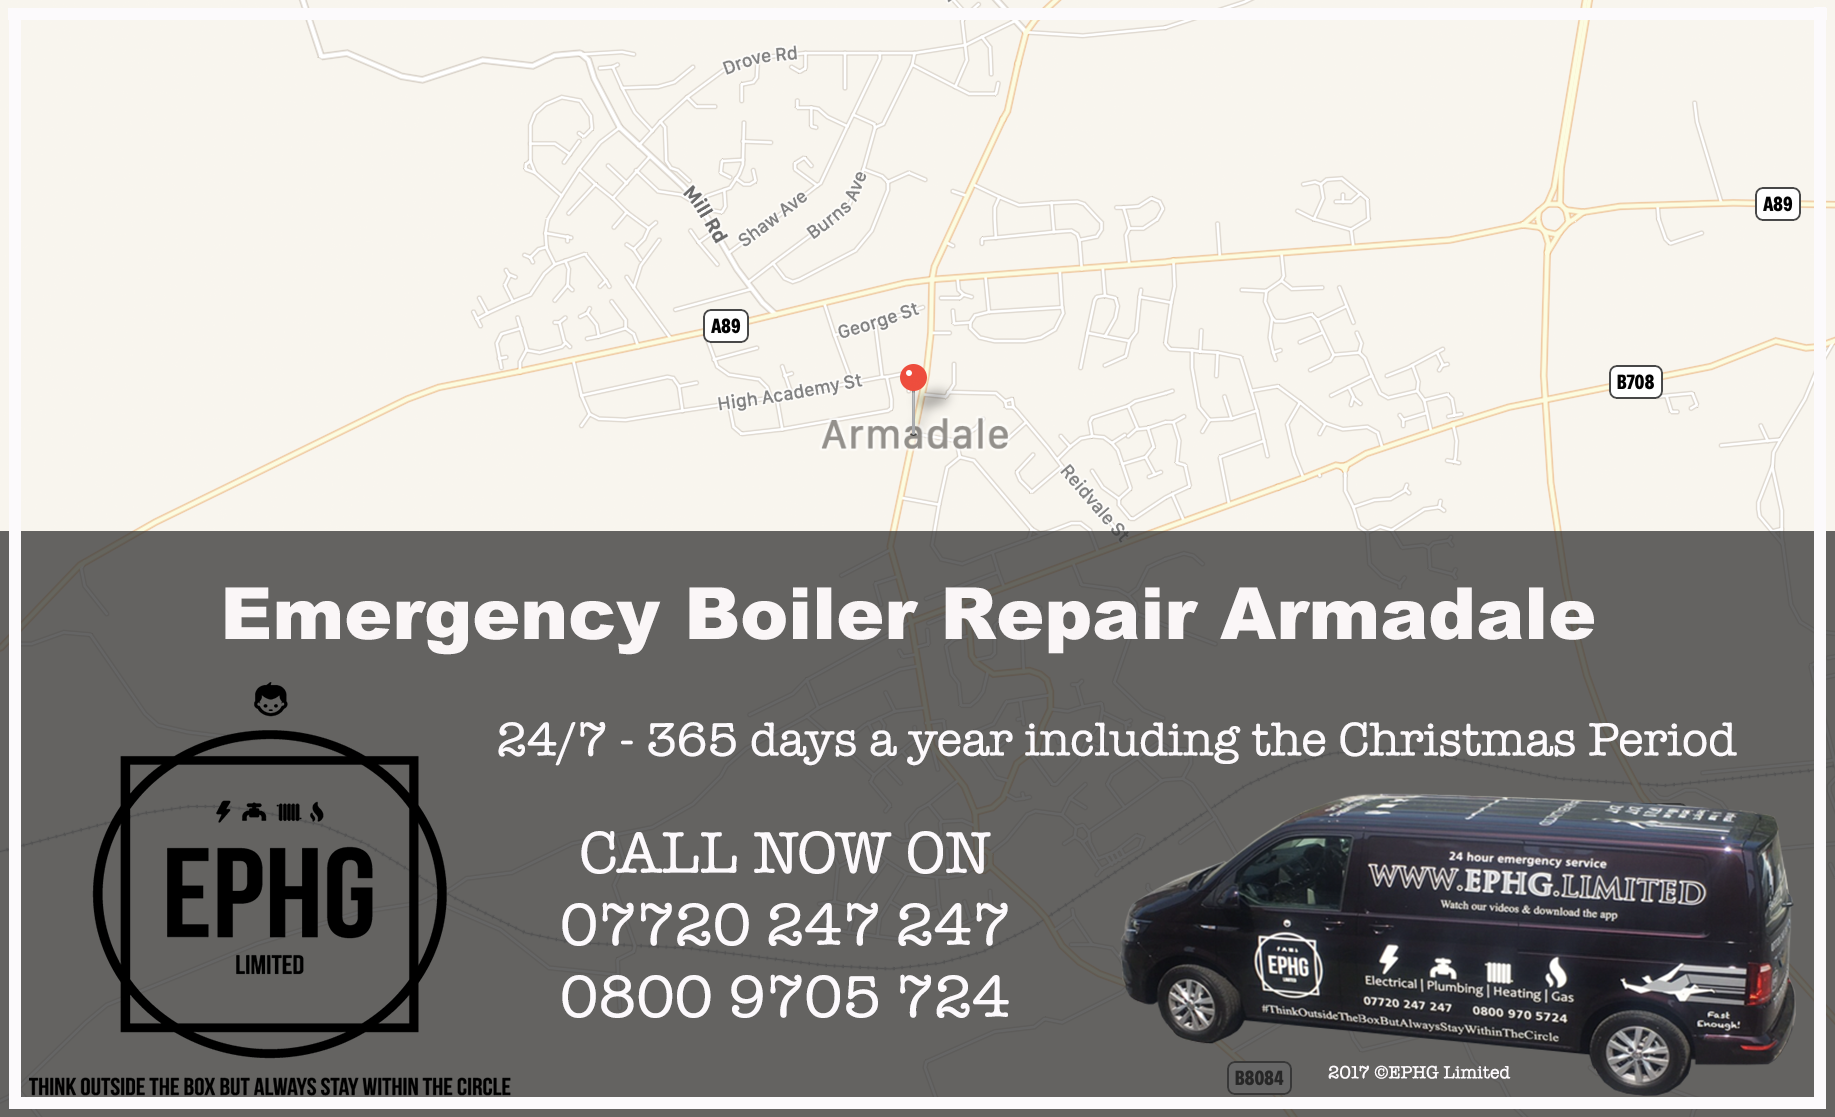 24 Hour Emergency Boiler Repair Armadale